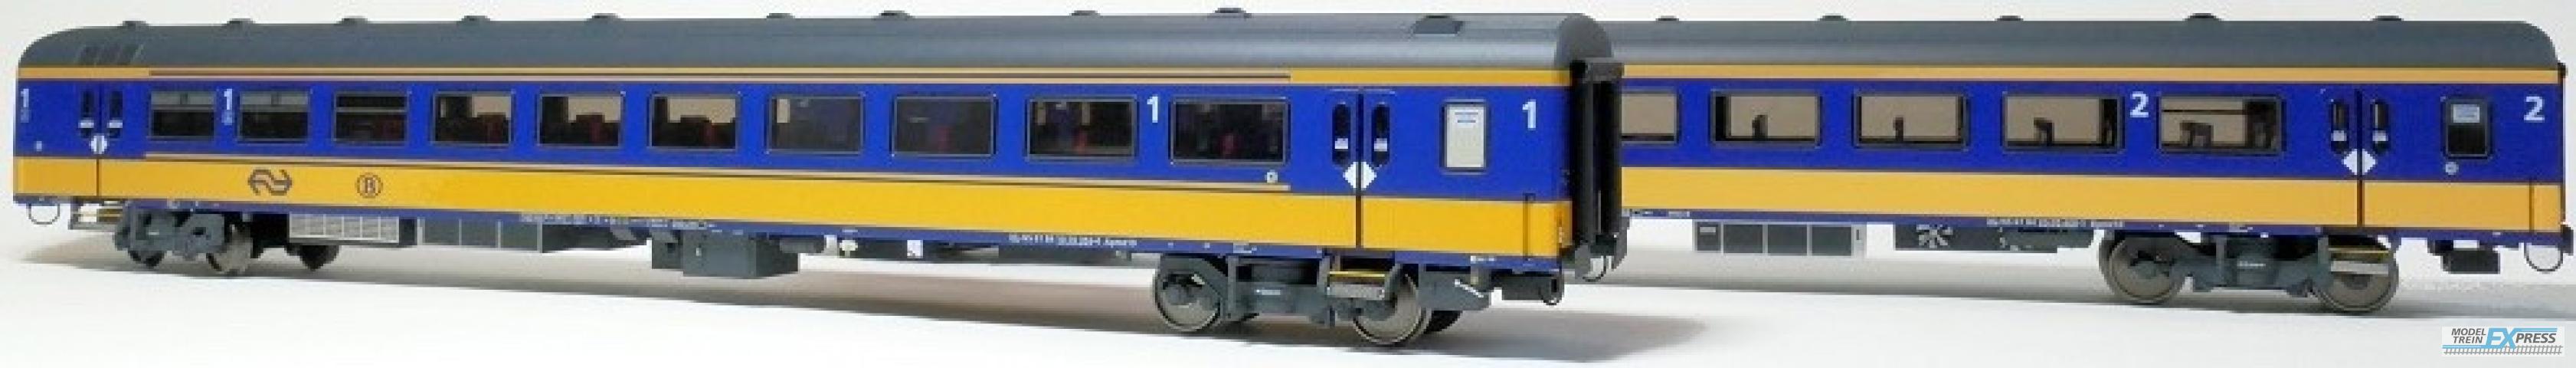 Exact-train 11022 2er-Set NS ICRm Garnitur 1 (Amsterdam - Brussel) für die Hsl-Strecke eingesetzt Reisezugwagen Bpmz10 und Reisezugwagen Apmz10 ( Neue Farbe Gelb / Blau), Ep. VI